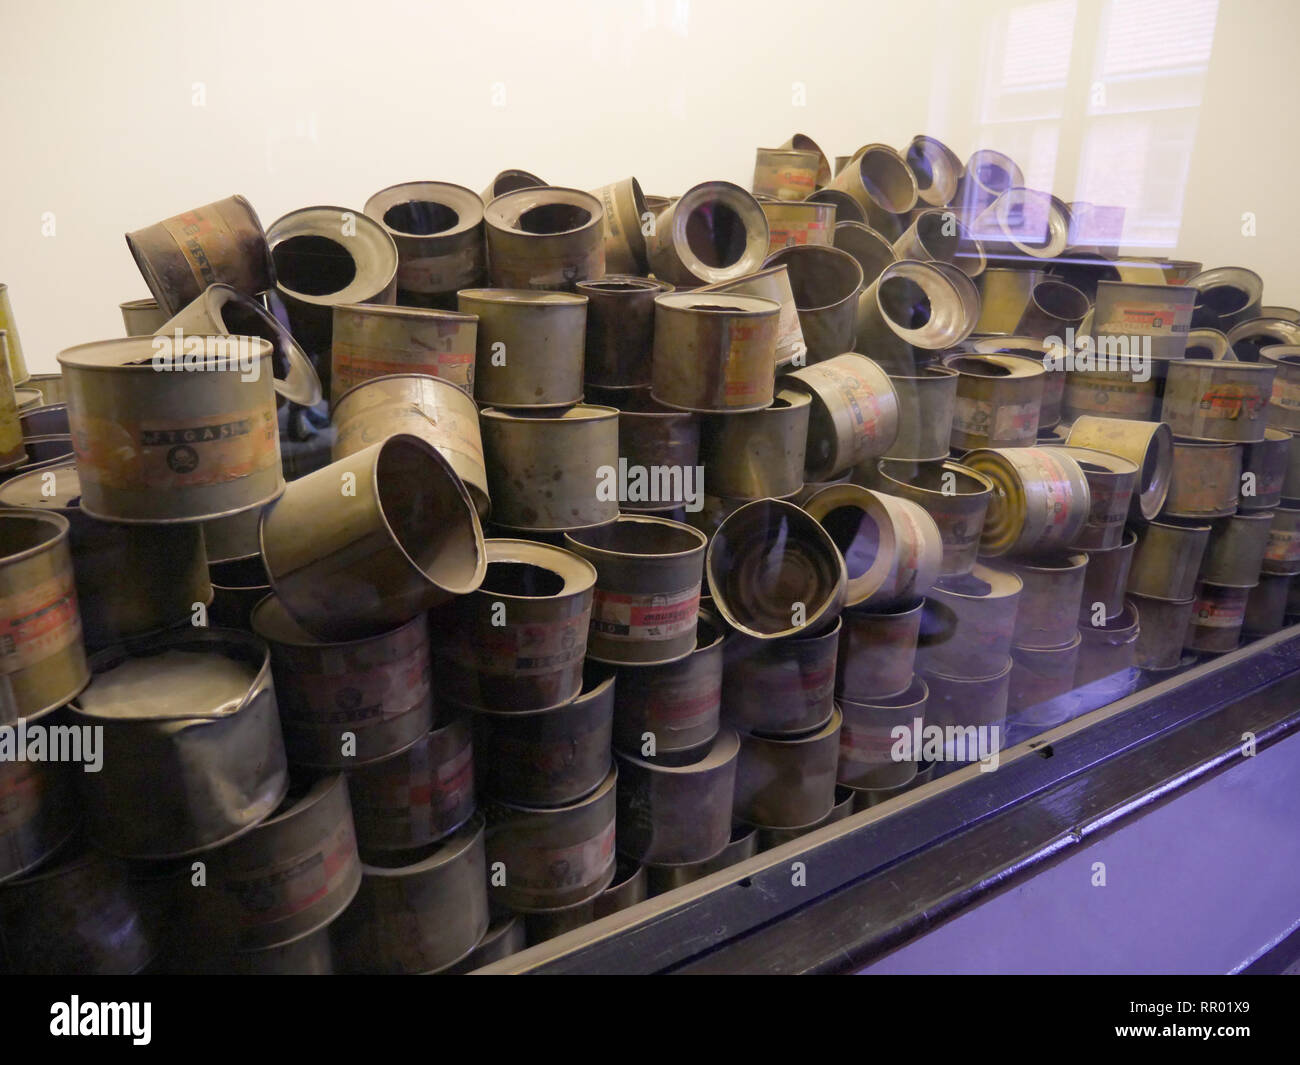 Polen - Auschwitz Museum Sehenswürdigkeiten im ehemaligen Konzentrationslager. Leeren Zyklon B cannisters, das Gas verwendet, um die Menschen in die Gaskammern zu töten. Stockfoto